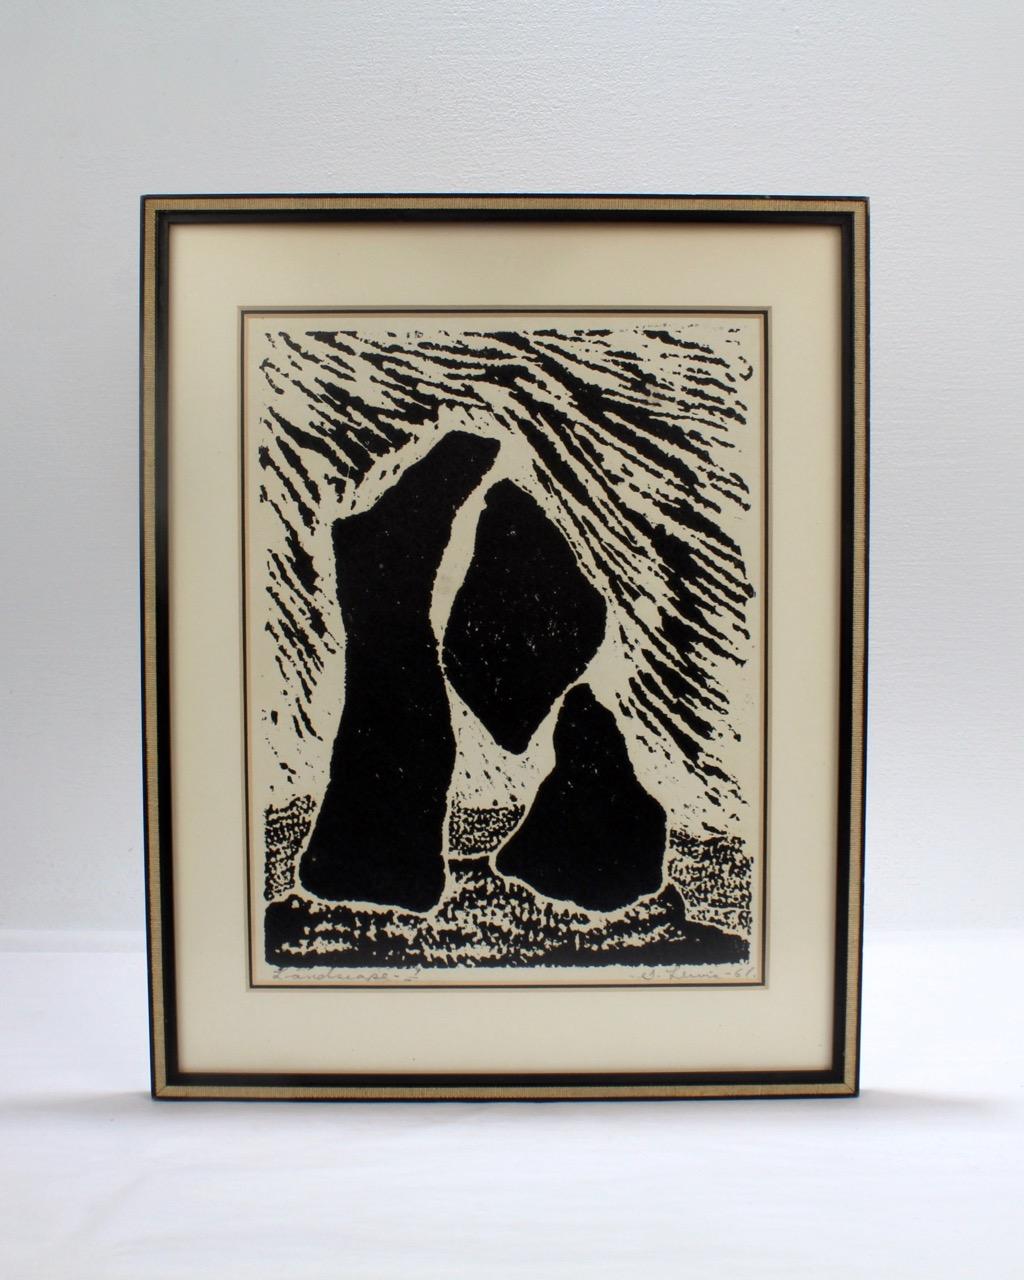 Lithographie moderniste de l'artiste canadien Stanley Lewis sur papier vélin.

Intitulé : Paysage

Titré et numéroté 9/30 en bas à gauche.

Signé S. Lewis et daté 1961 en bas à droite.

Taille de la vue : environ 8 1/4 in. par 10 3/4